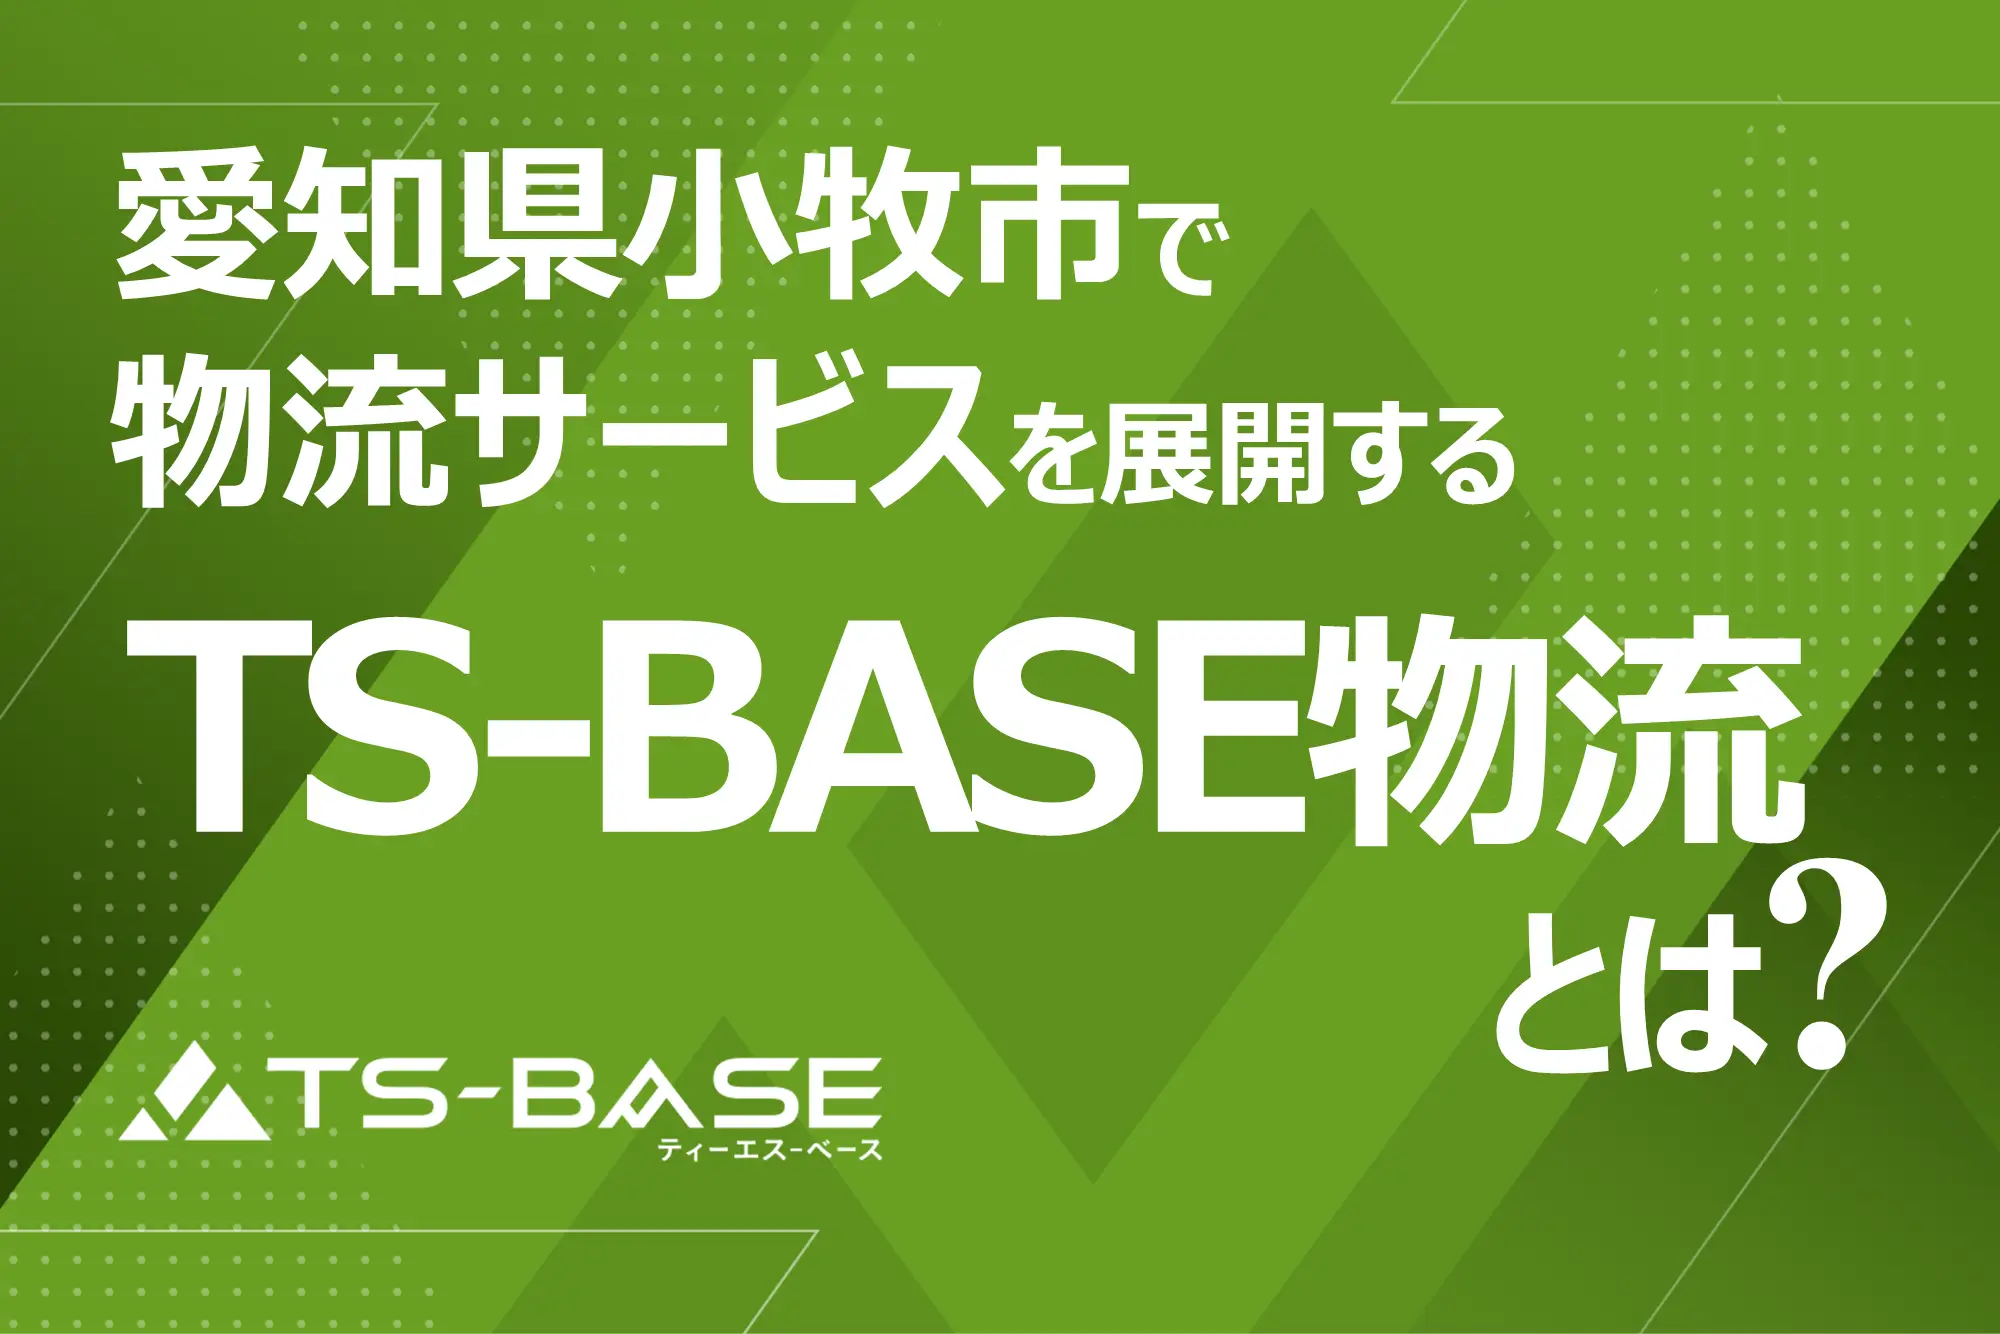 愛知県小牧市で物流サービスを提供する「TS-BASE 物流」とは